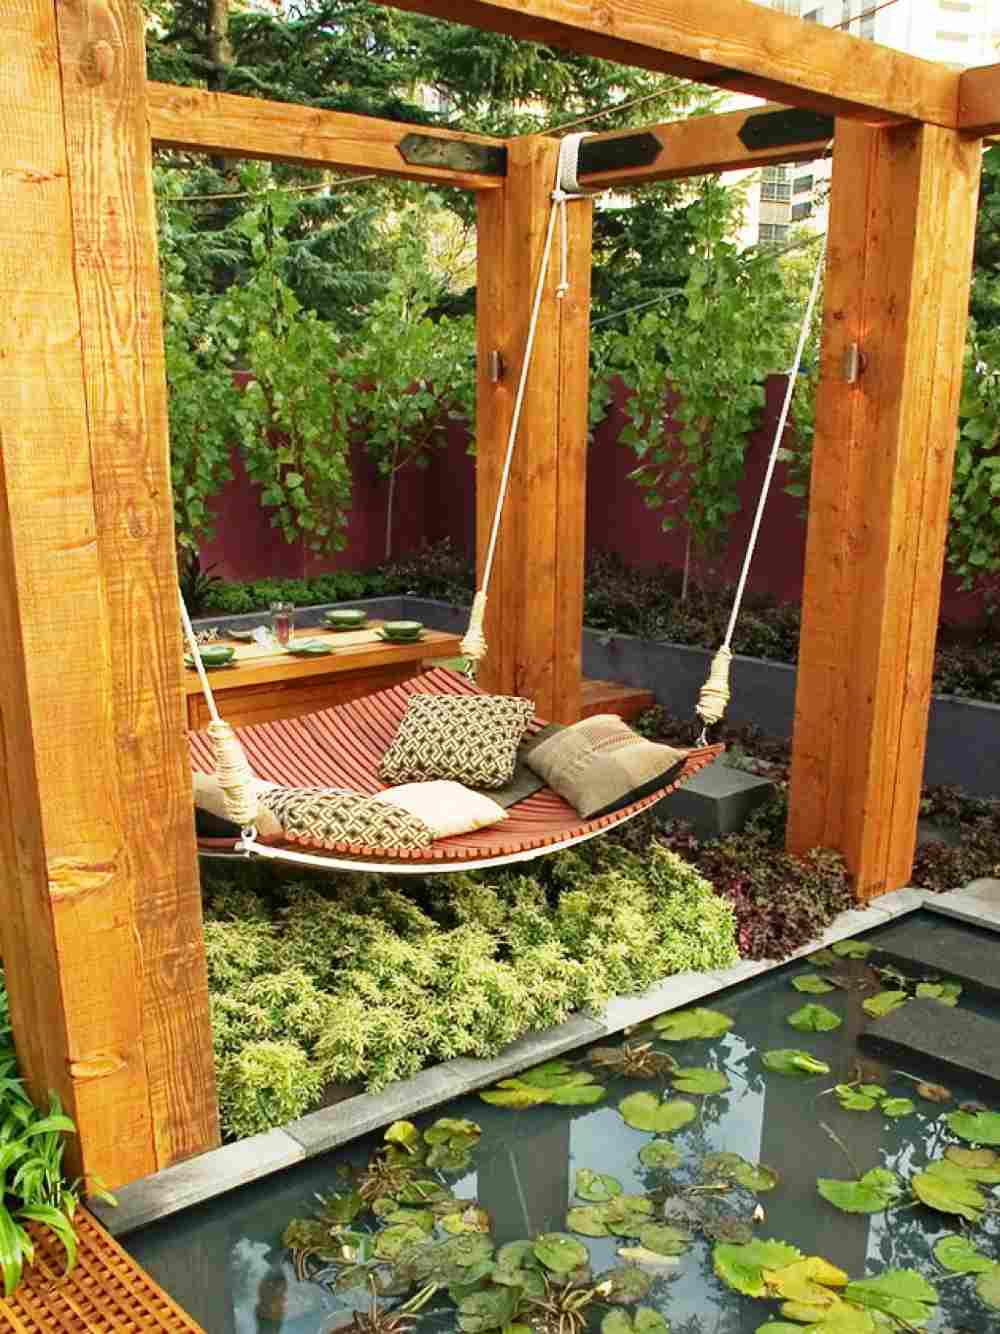 Garten und Terrasse Ideen Gartendeko Wasserteich Holz Landhaus Wohnstil Liegebett